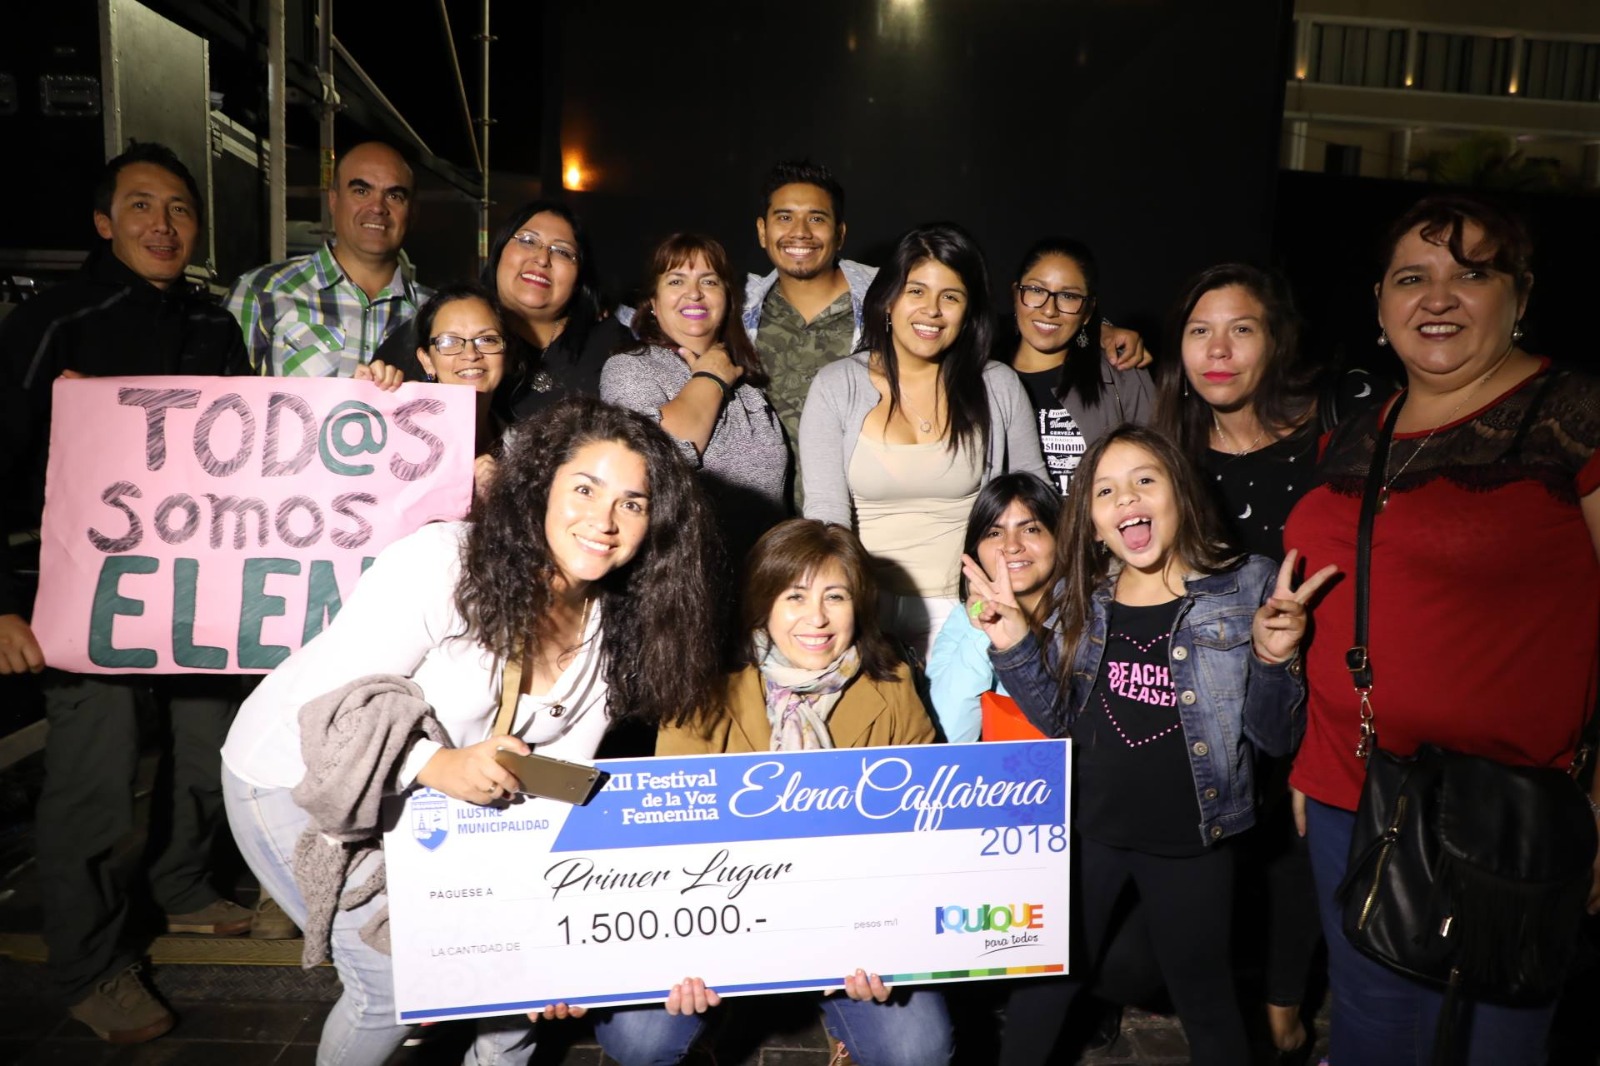 Municipalidad de Iquique invita a participar del XIV Festival de la Voz Femenina “Elena Caffarena”